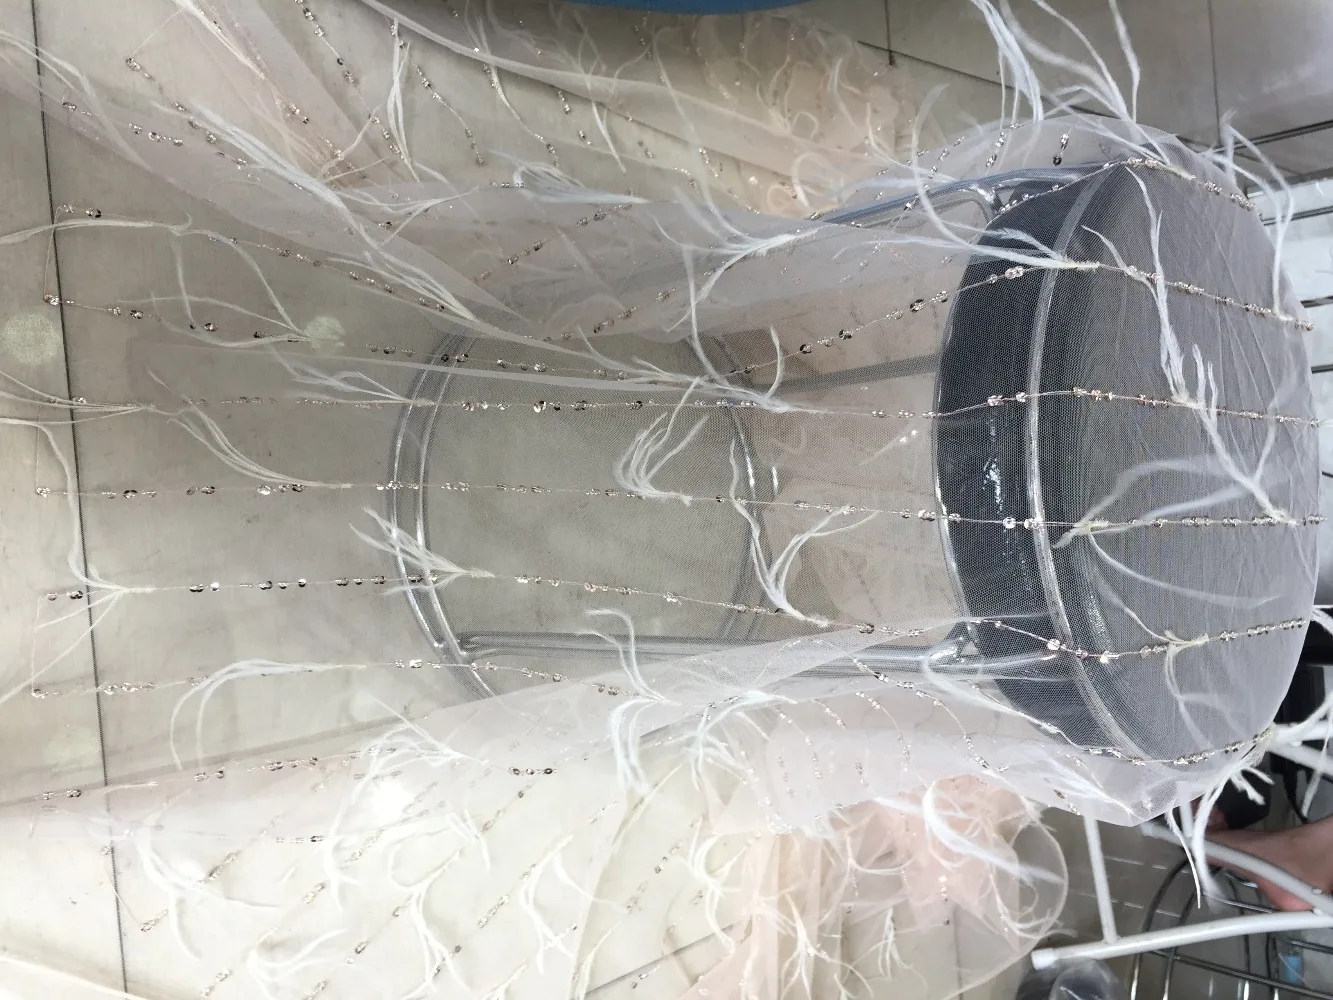 5 Yard 3d white lace stof med smukke blonder og sort! 2019 Luksus kvinder kjole lace materiale af god kvalitet!